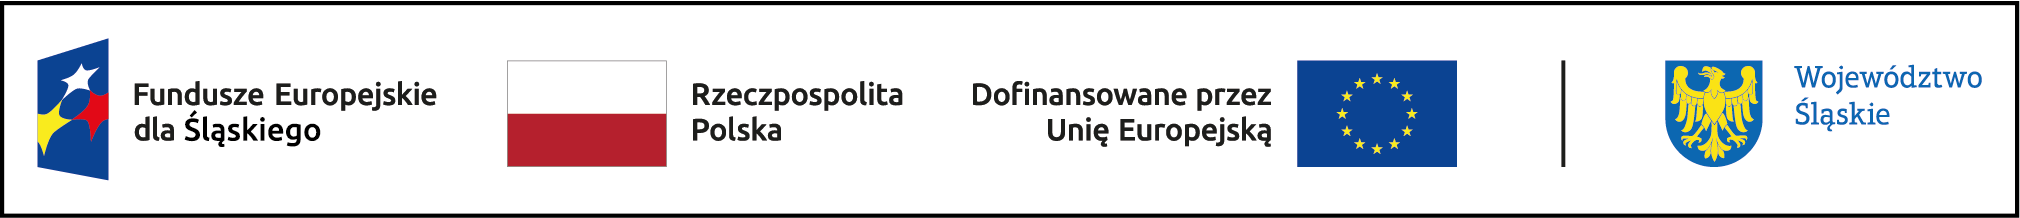 Przedstawienie logo Funduszy, flagi Polski, Unii Europejskiej oraz godła Województwa śląskiego